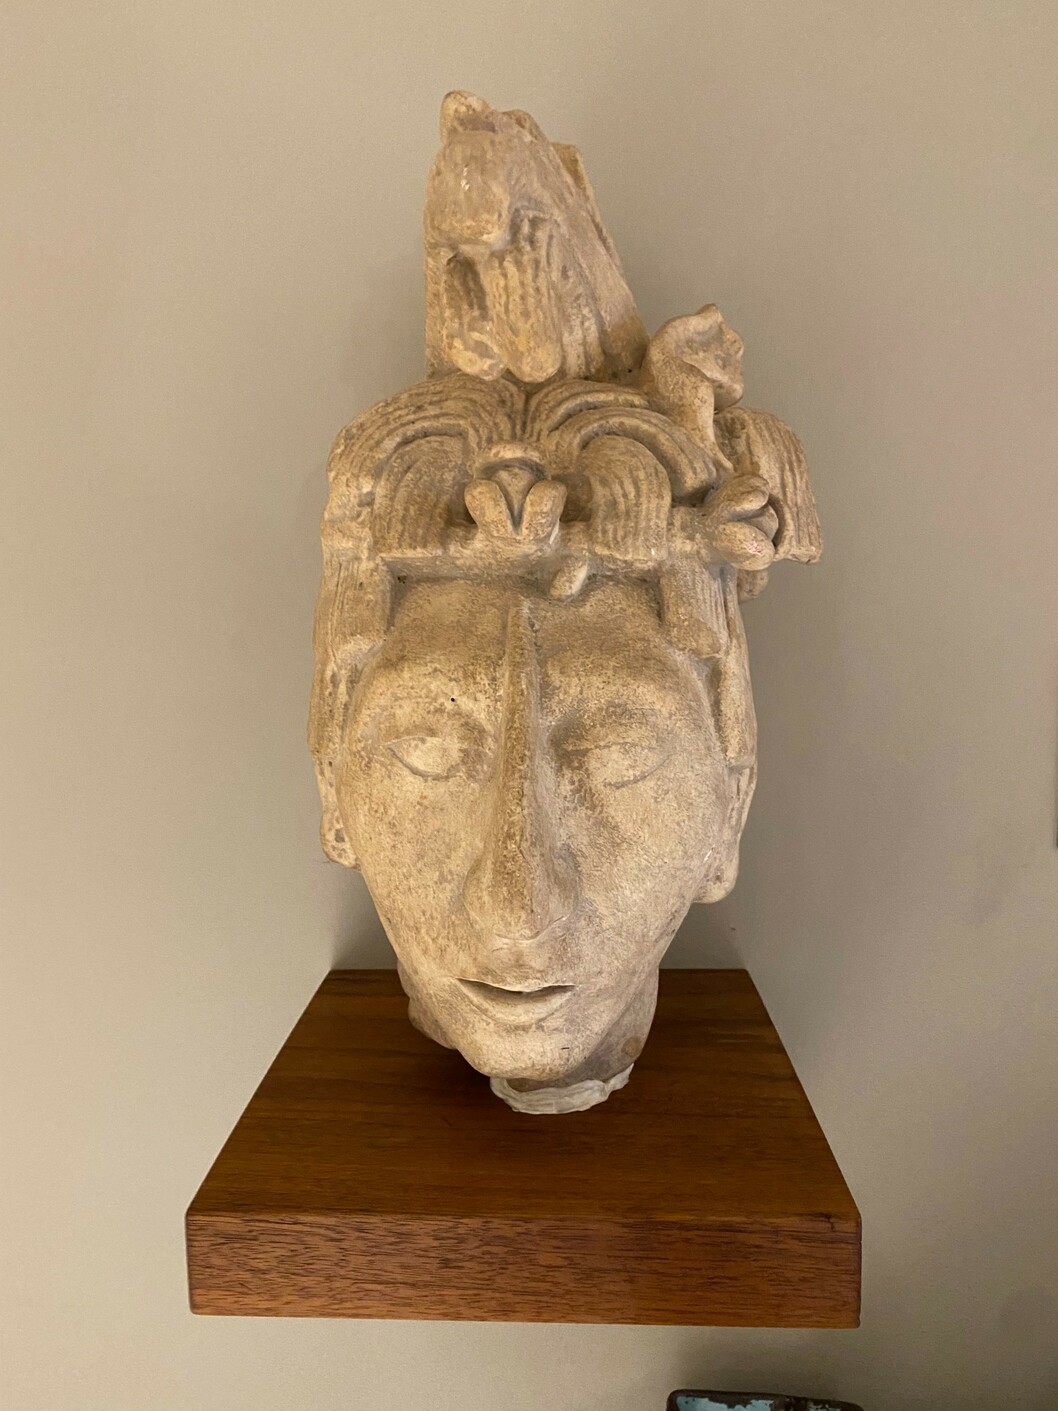 Replica of Palenque Head, UNNY187G, 1959, Mexico